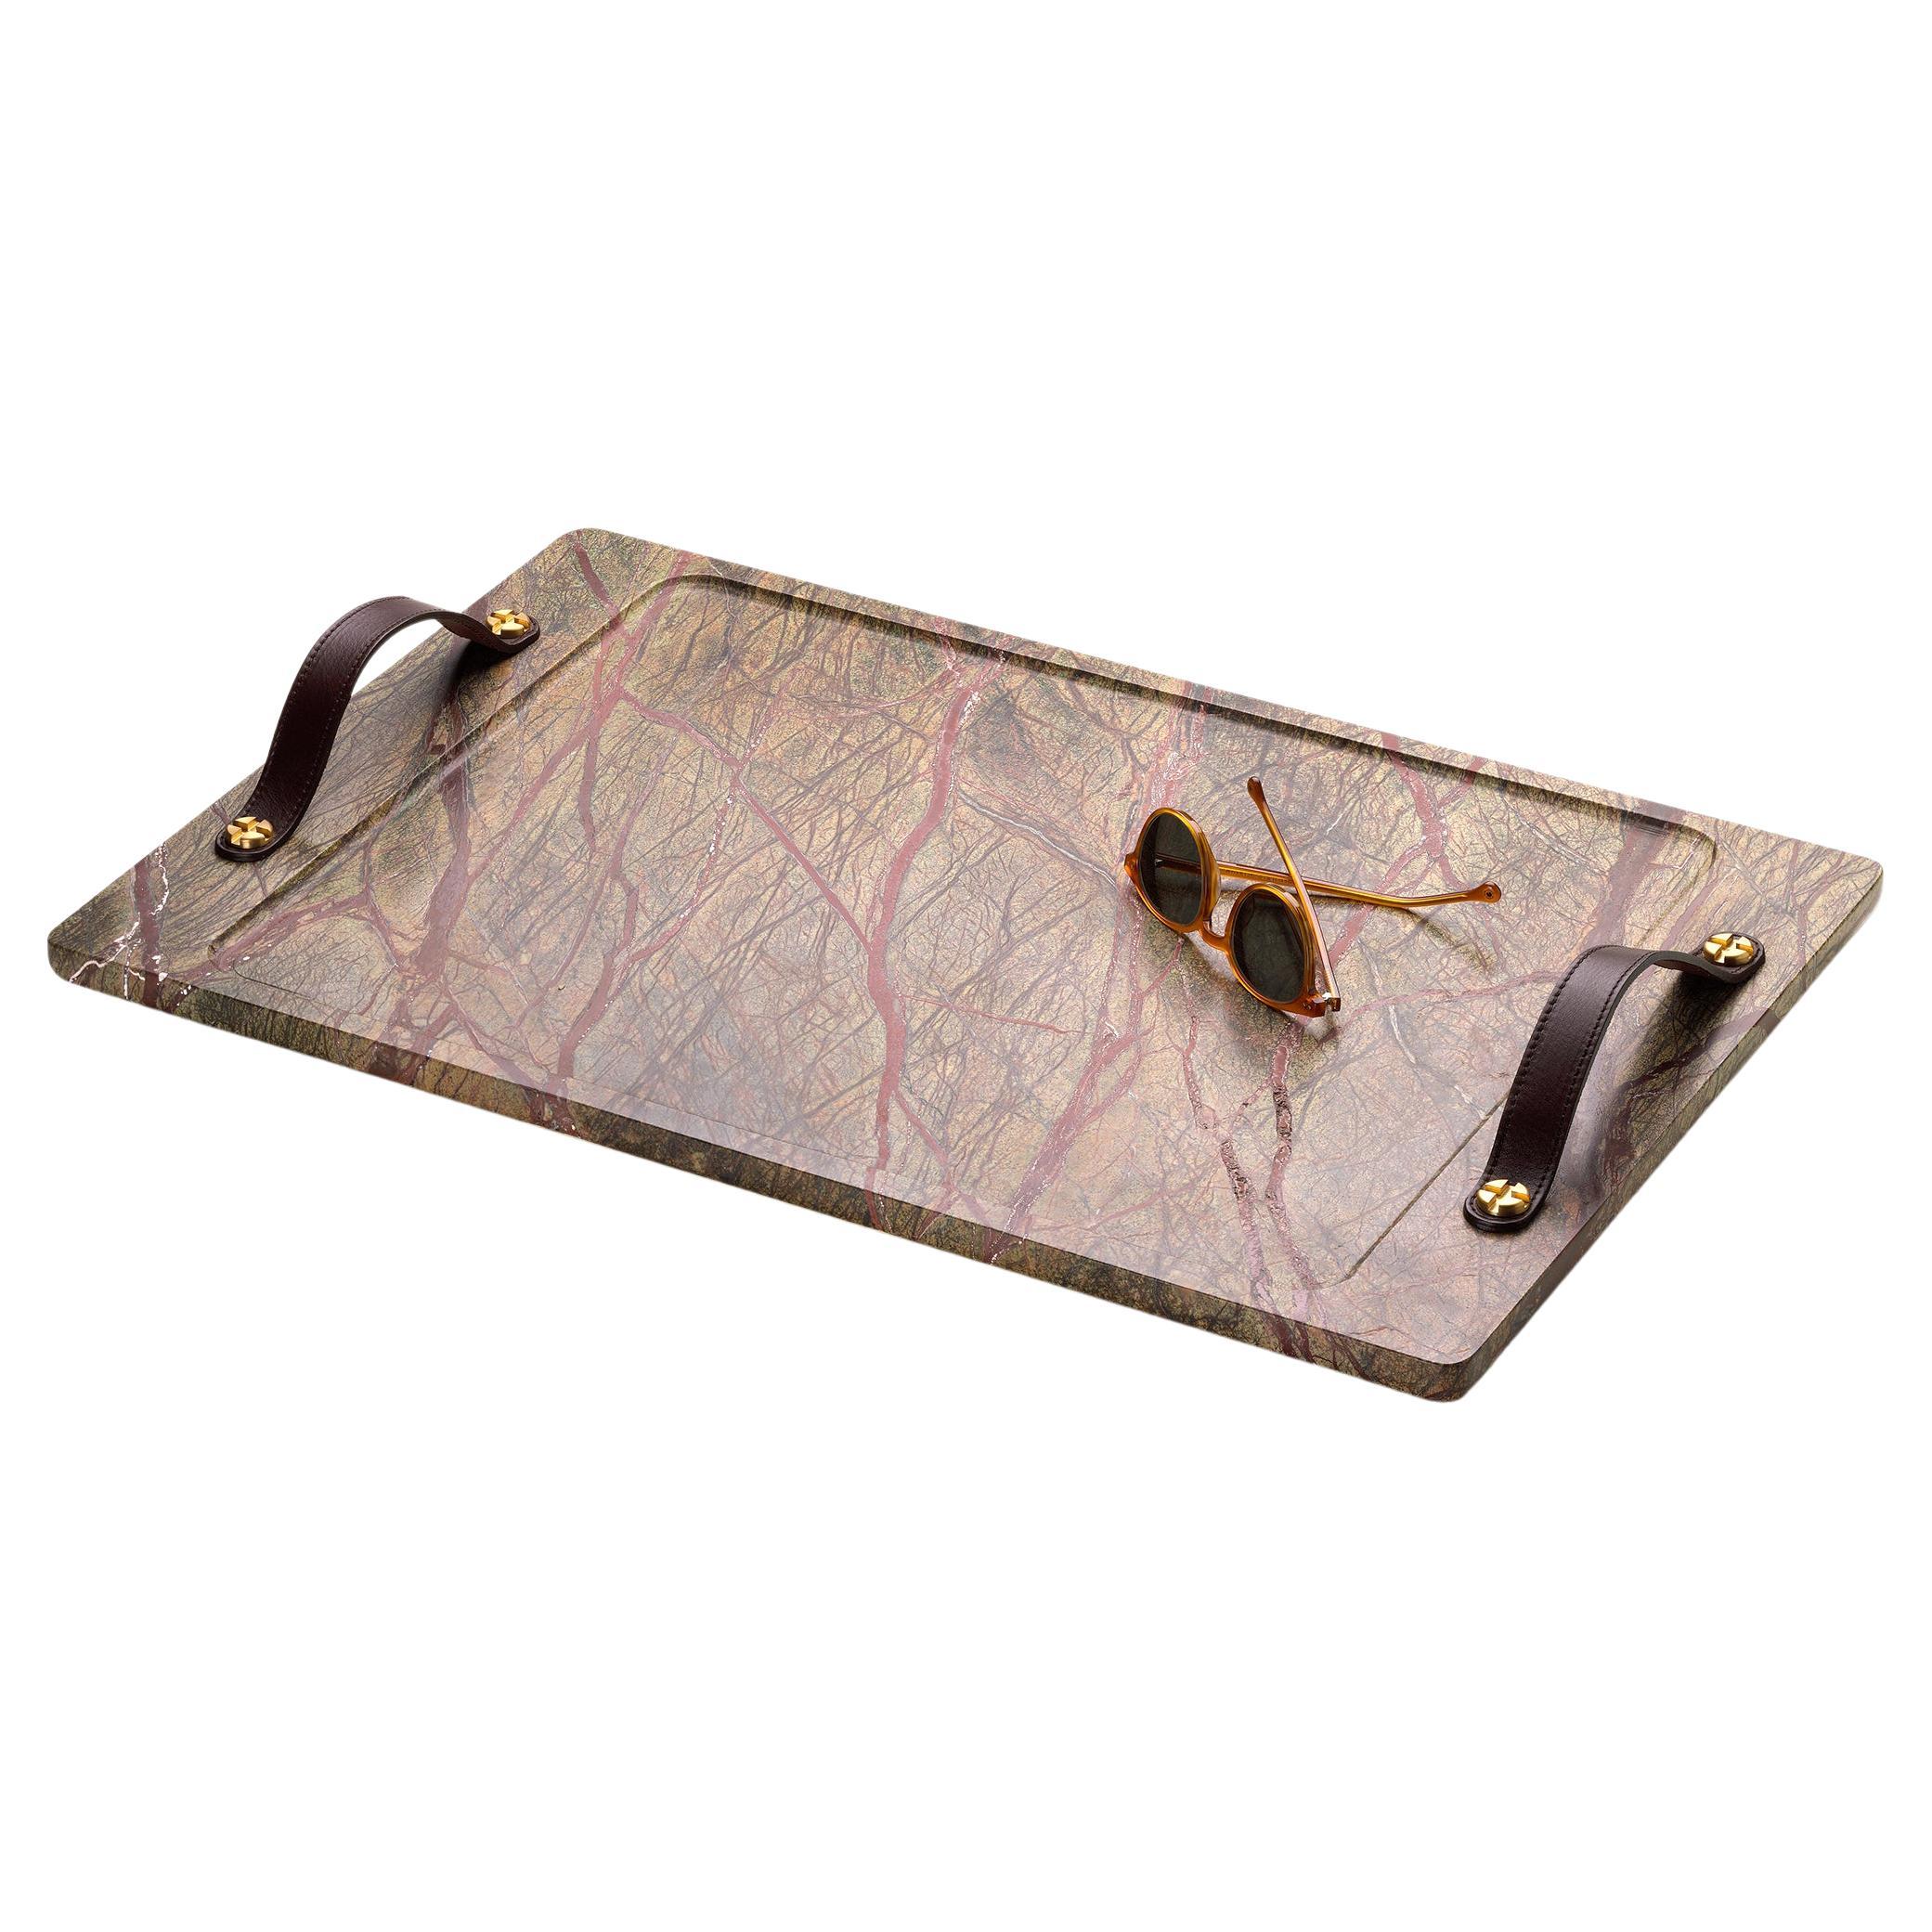 Bidasar Marmortabletts mit Lederriemen und Bodenverstärkung aus Messing. Tablett aus Bidasar-Marmor mit unbearbeiteter Textur. Indischer Regenwaldmarmor, auch bekannt als Bidasar, ist der feinste und hochwertigste indische Marmor. Der Stein zeigt